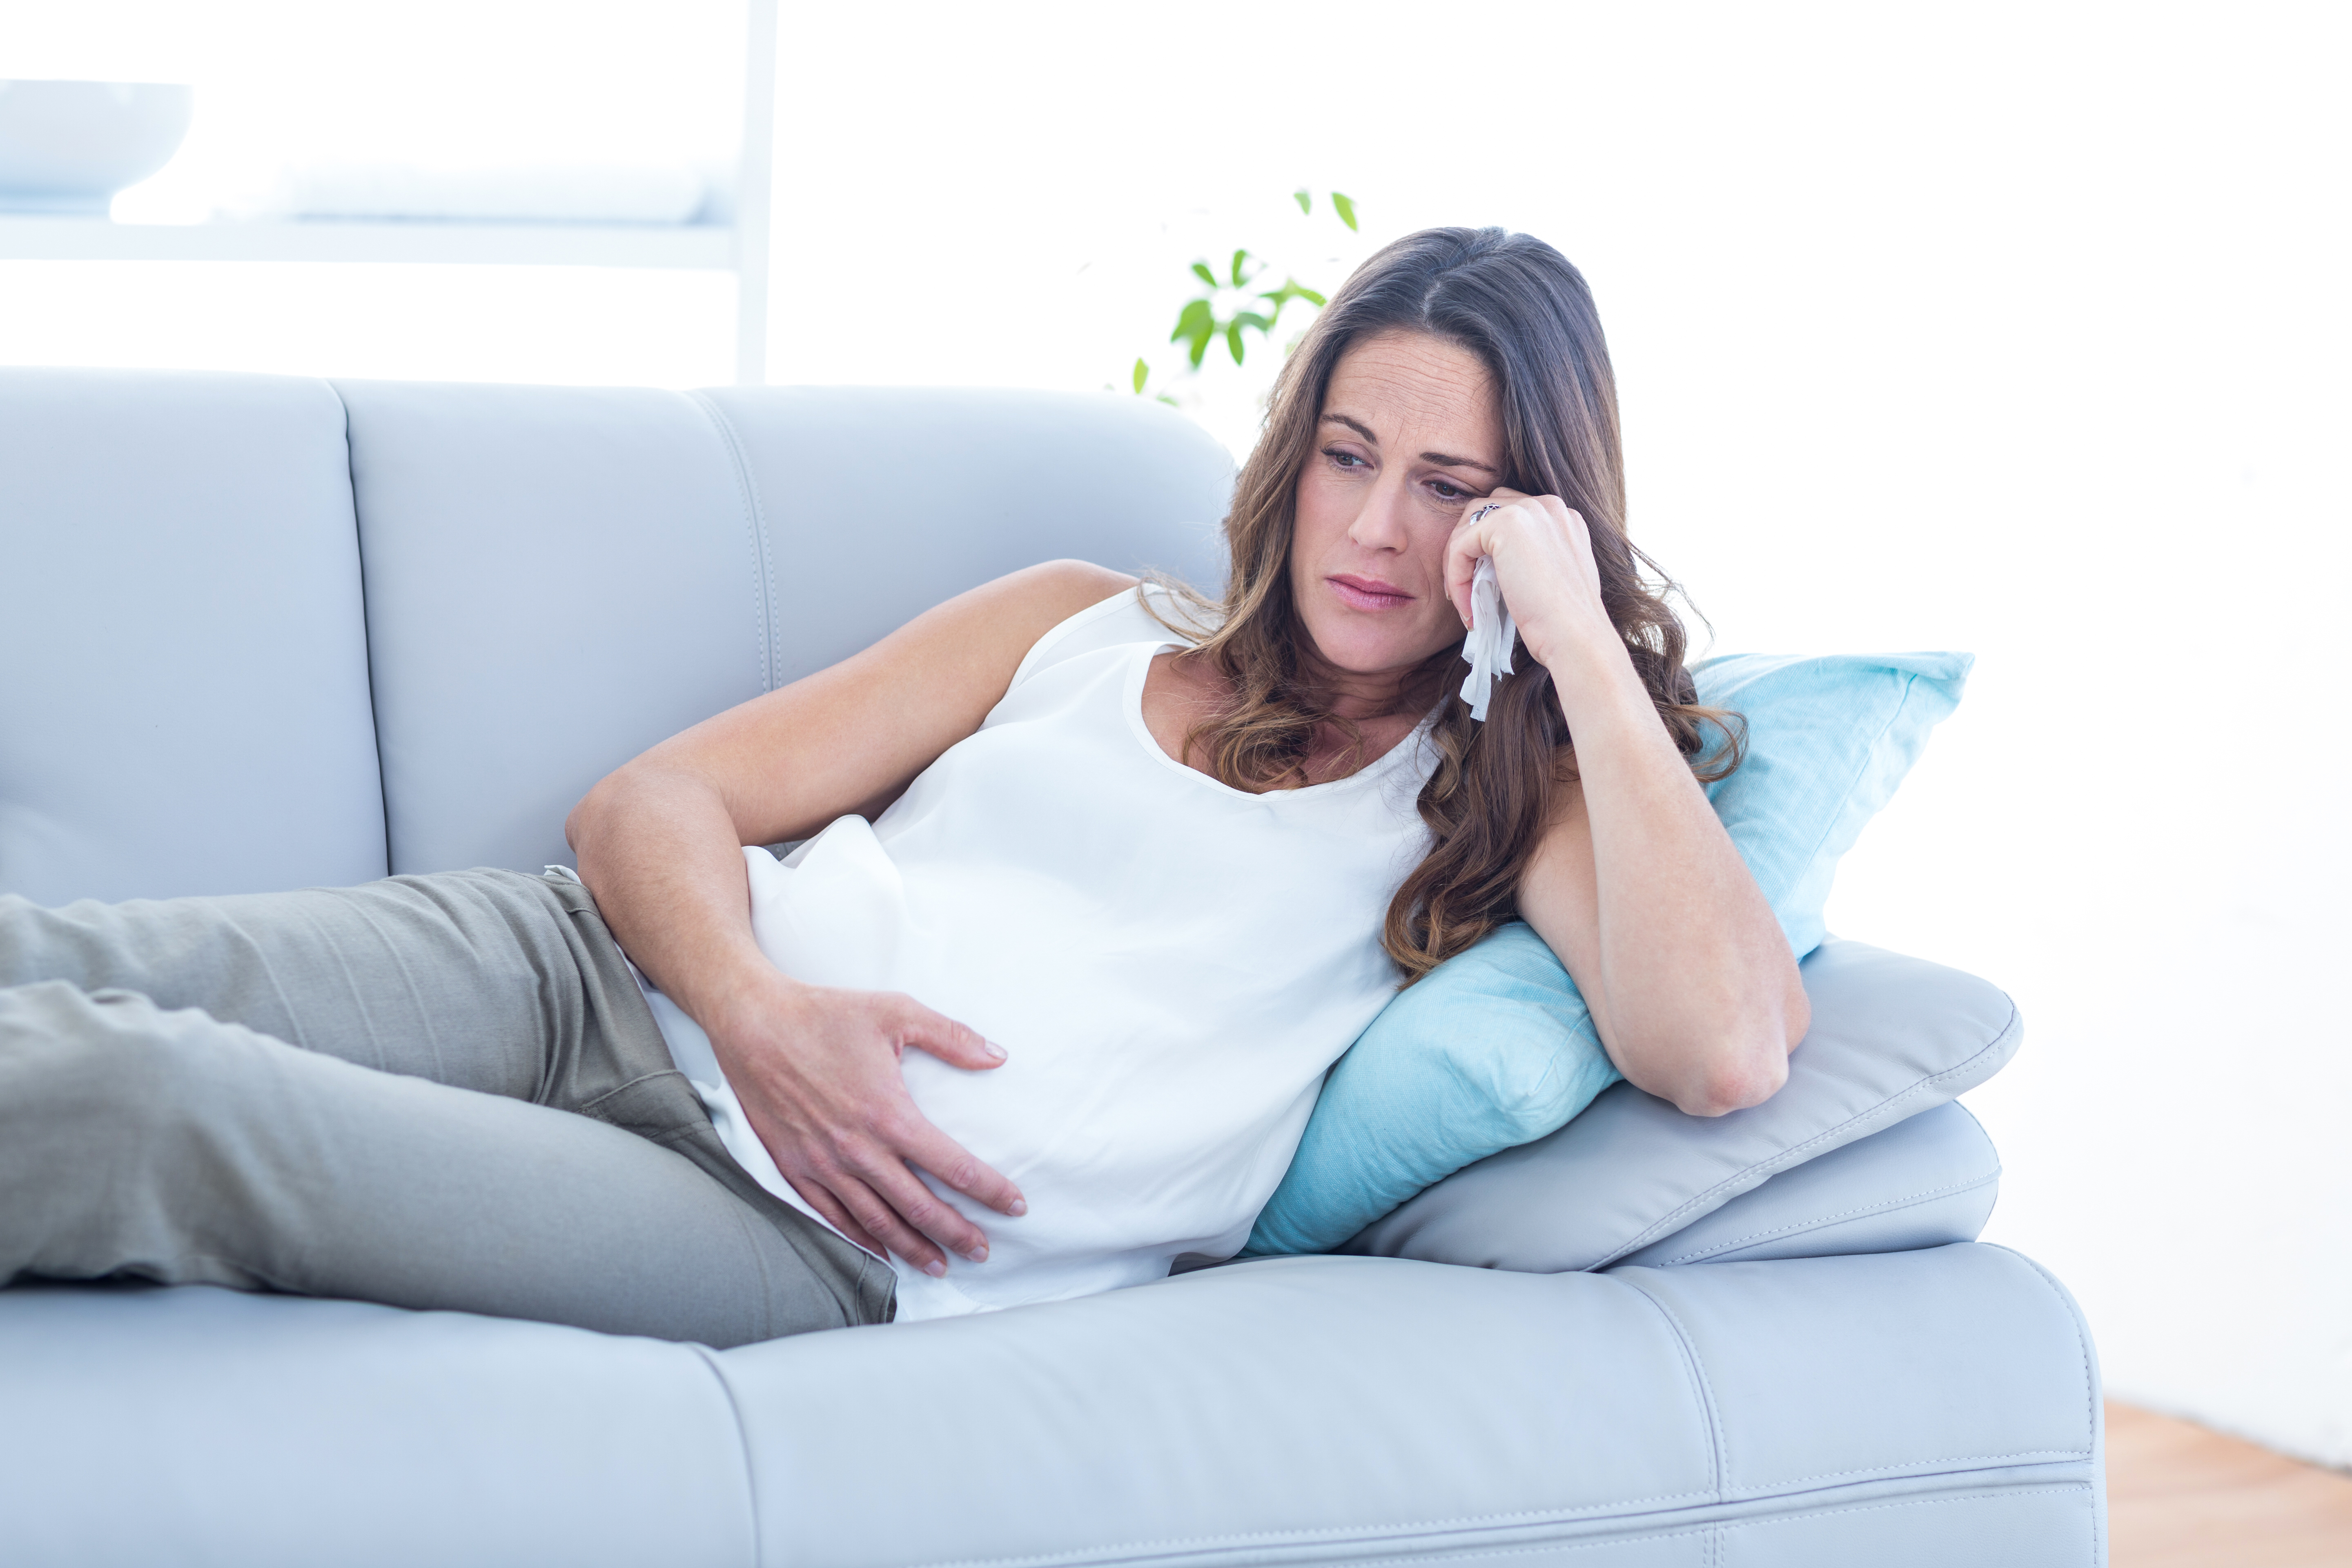 Une femme enceinte assise sur un canapé, l'air triste | Source : Shutterstock